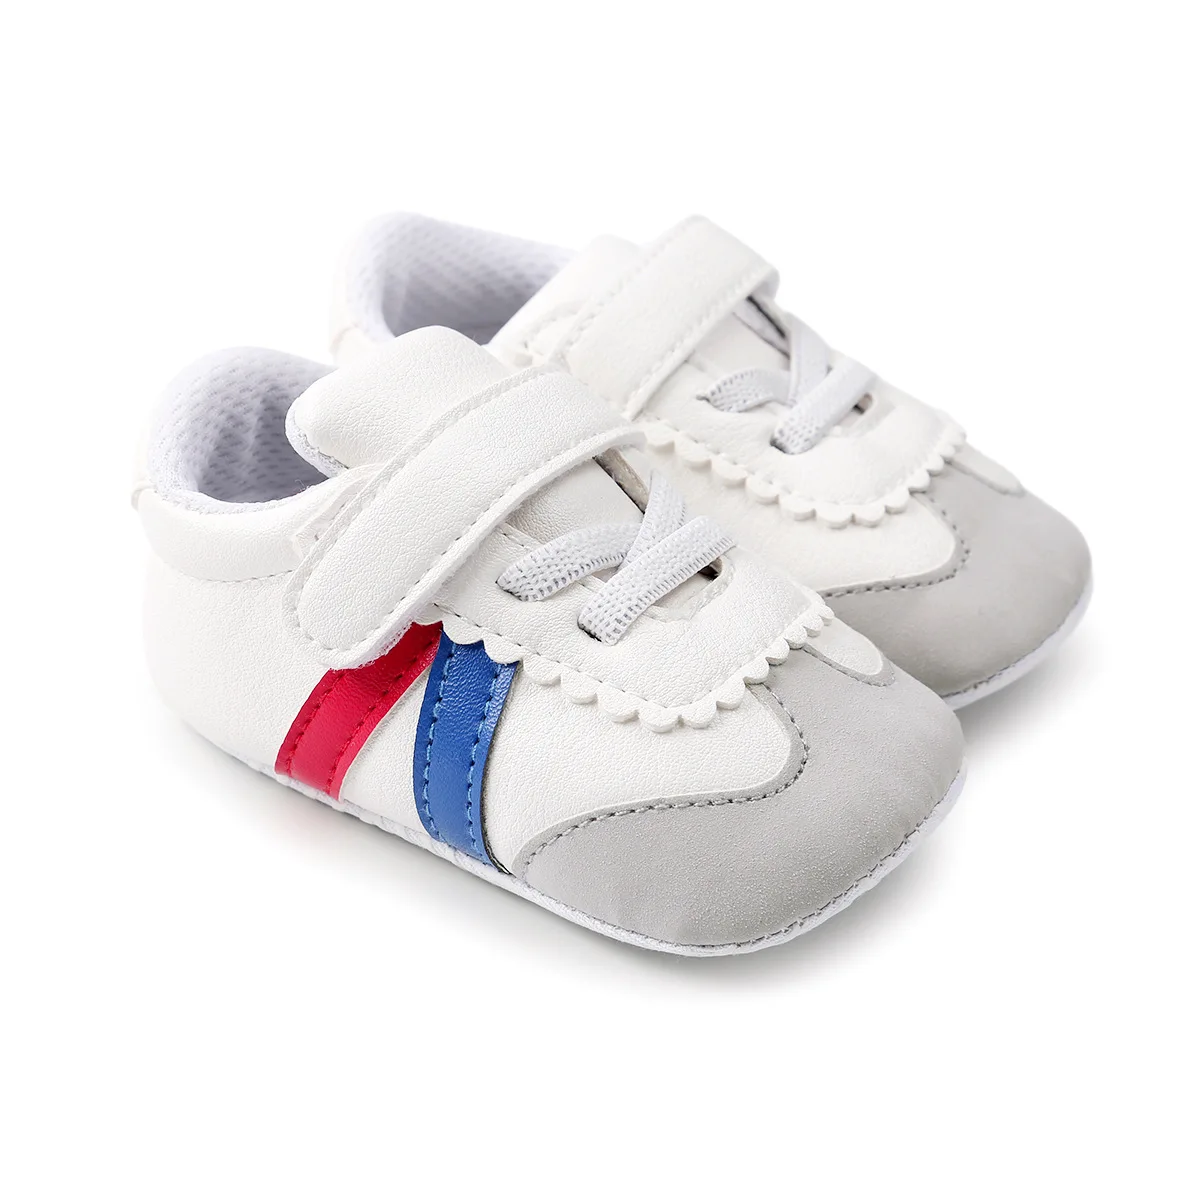 Новинка весны Мягкие Мокасины Moccs обувь детская обувь для маленького мальчика Повседневная детская обувь для девочек Sapatos de Bebe первых шагов